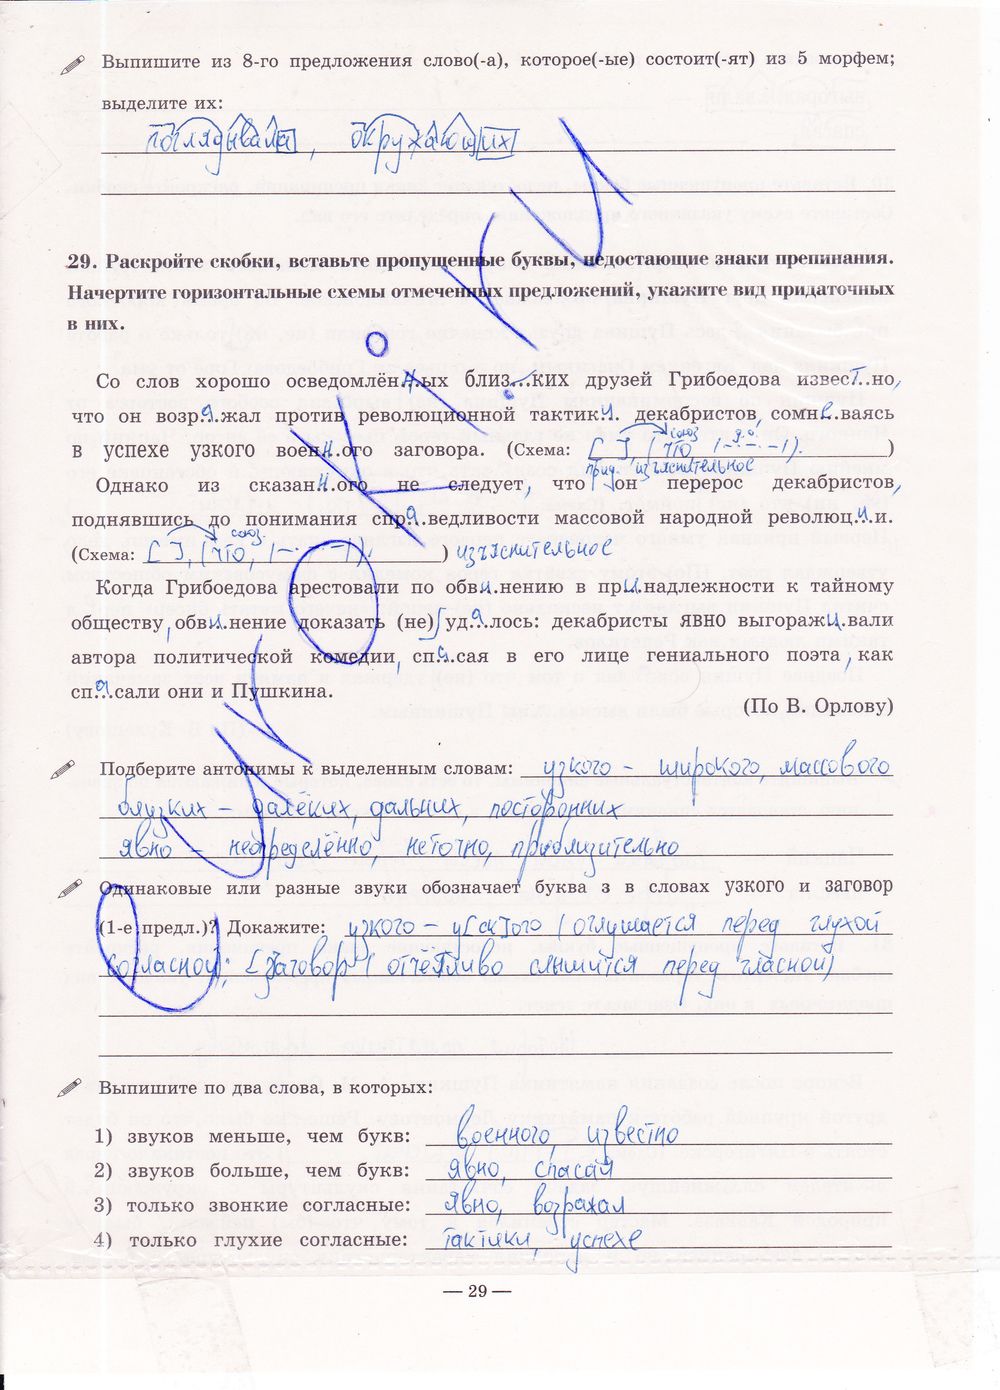 ГДЗ Русский язык 9 класс - стр. 29